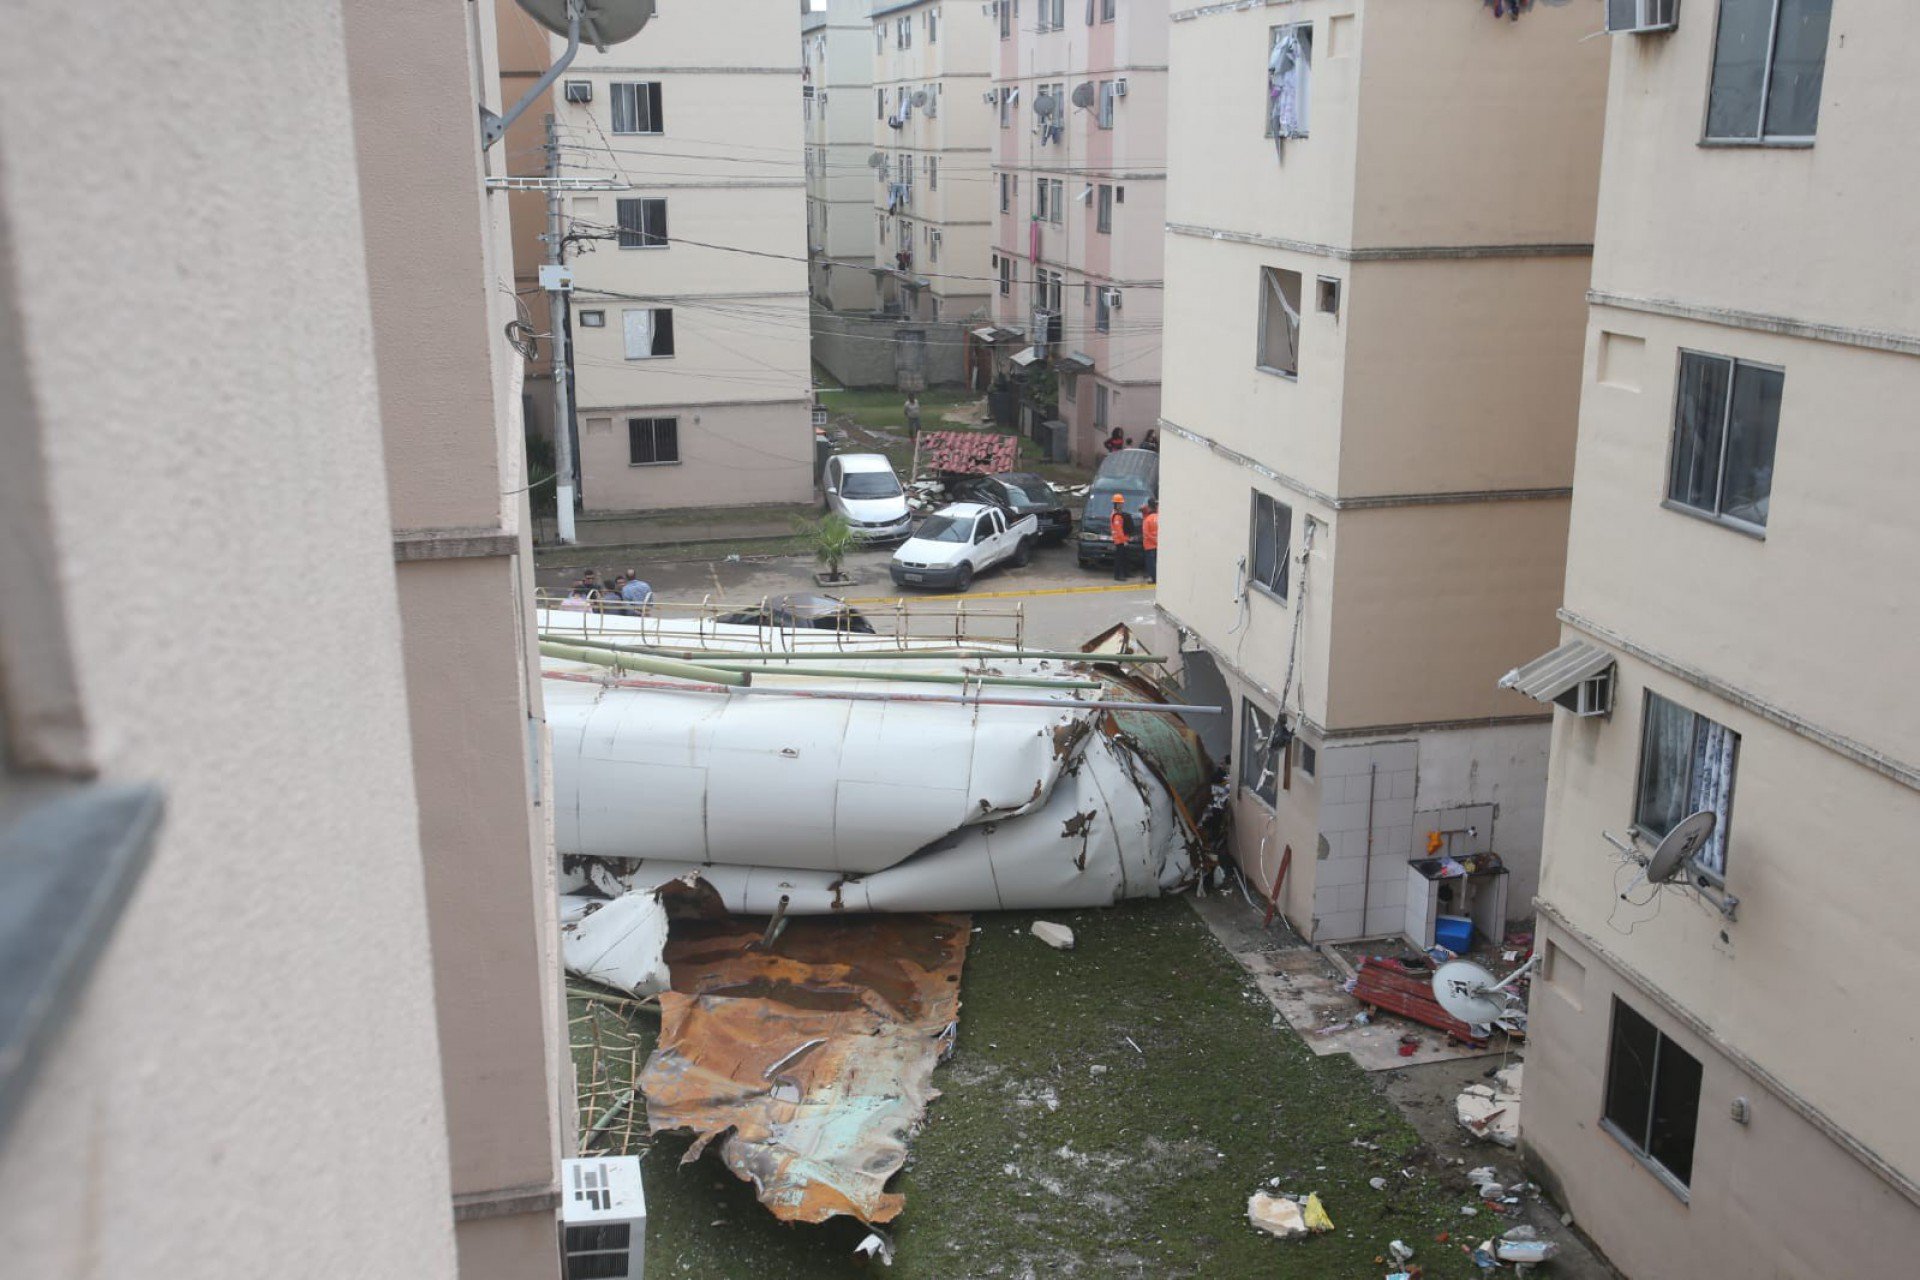 Caixa d'água desabou e causou alagamento em diversos apartamentos do condomínio - Cléber Mendes/Agência O Dia